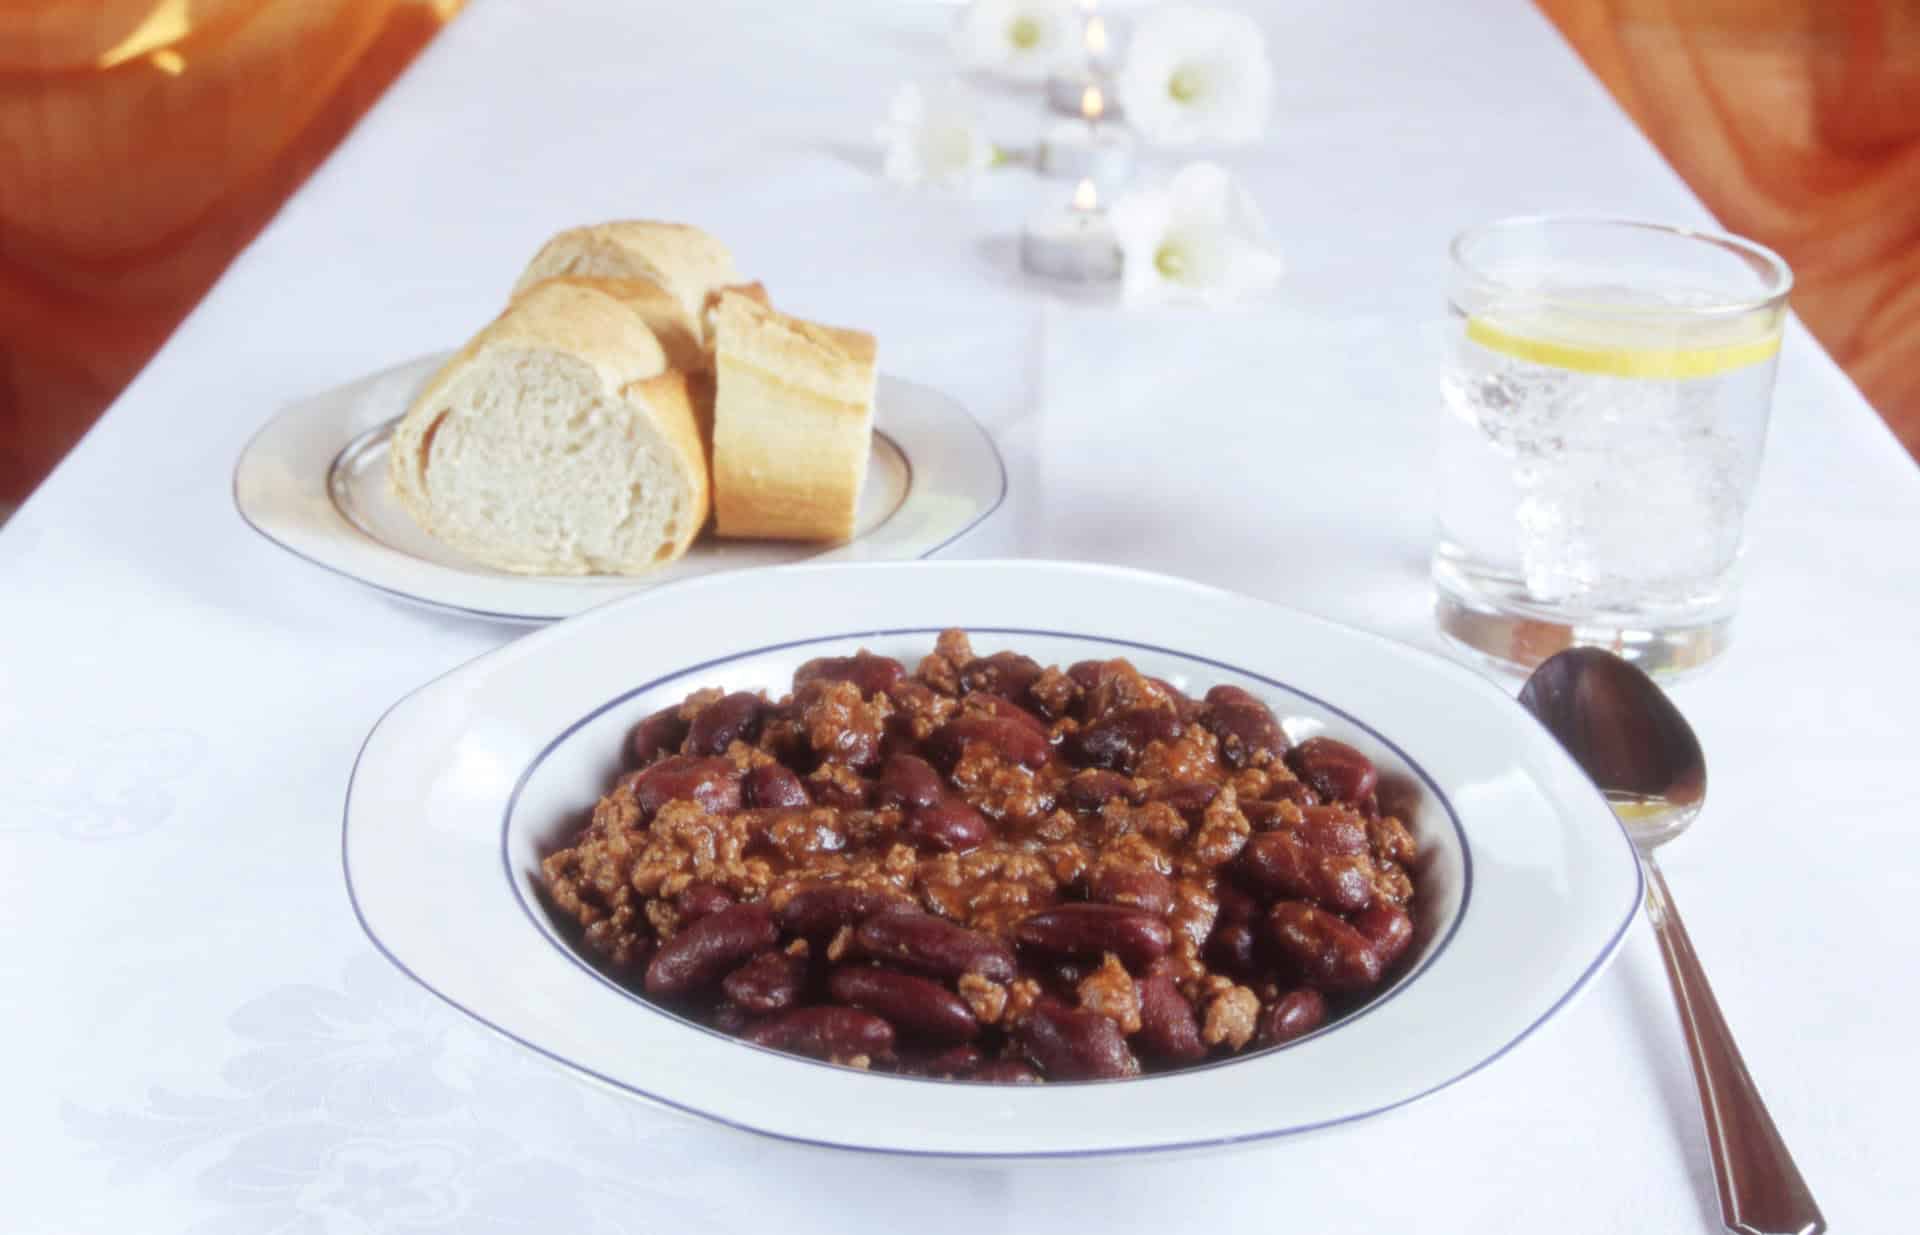 chili con carne på bordet med glas och bröd